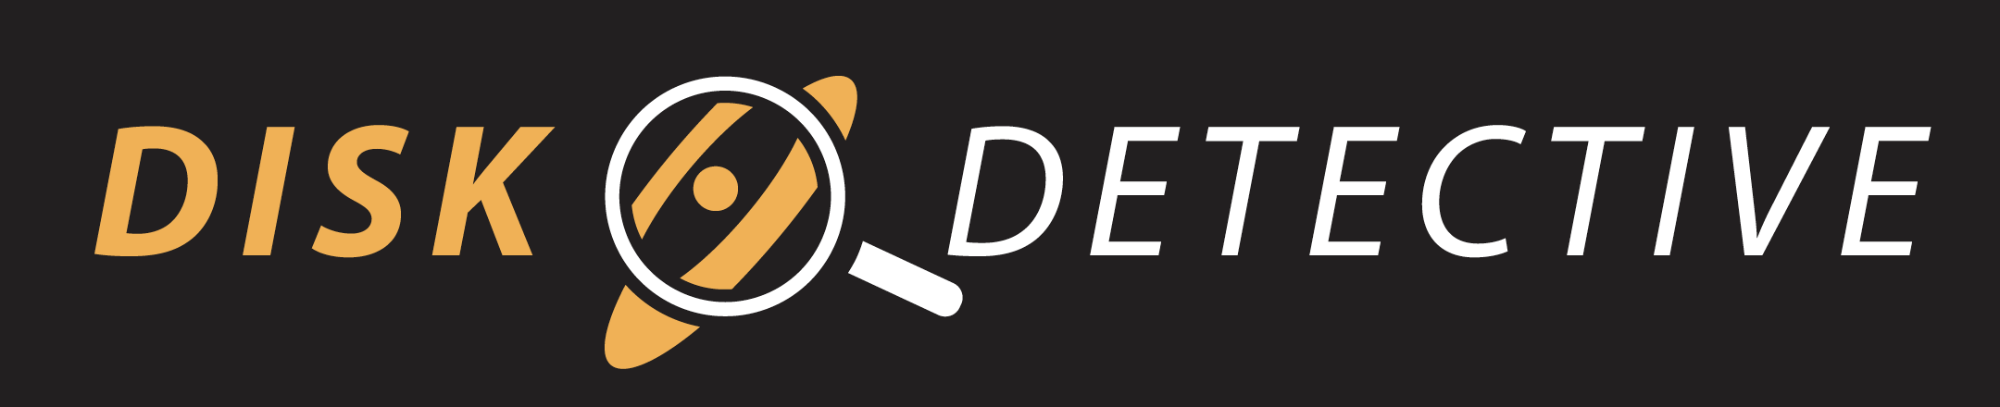 Disk Detective logo